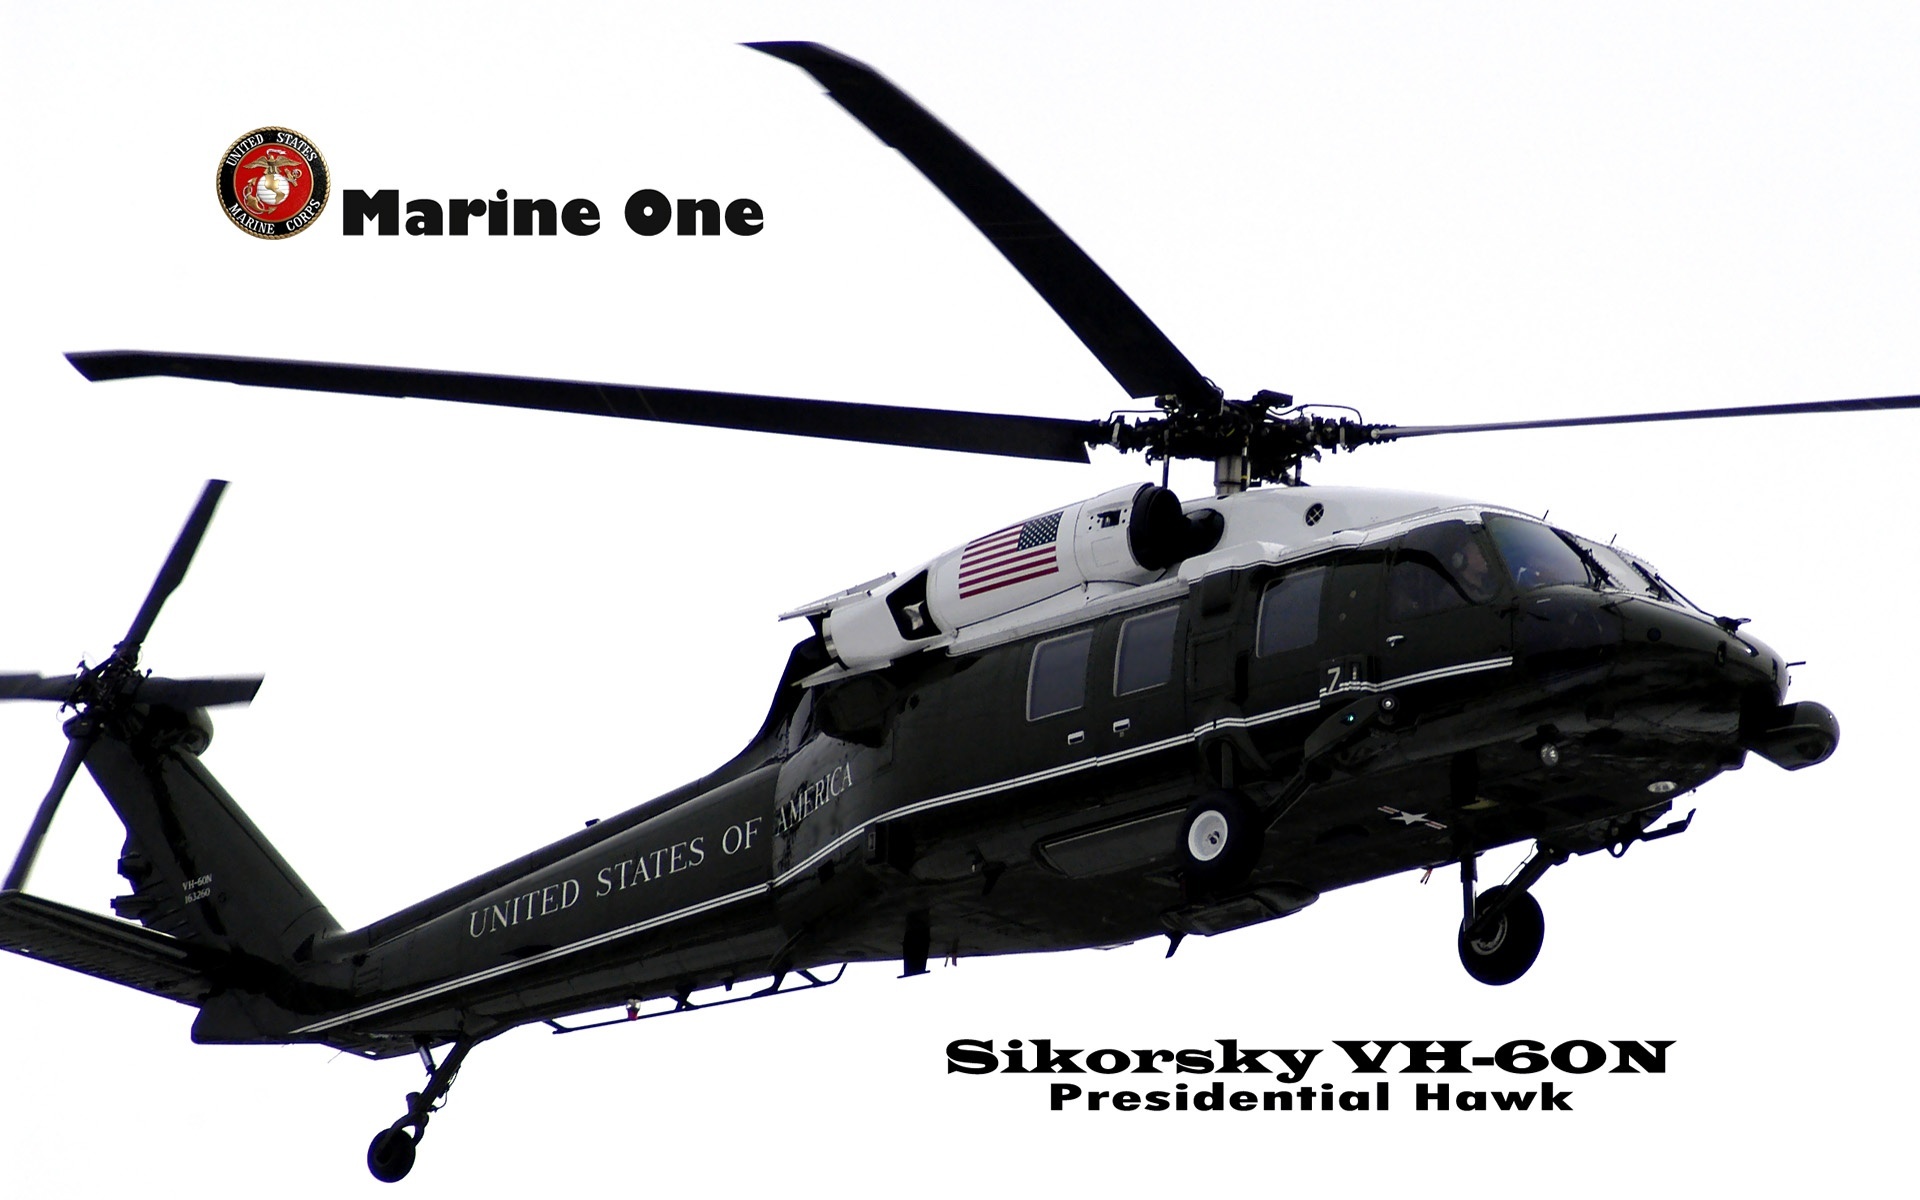 Sikorsky VH-60N, Presidential Hawk, Marine One